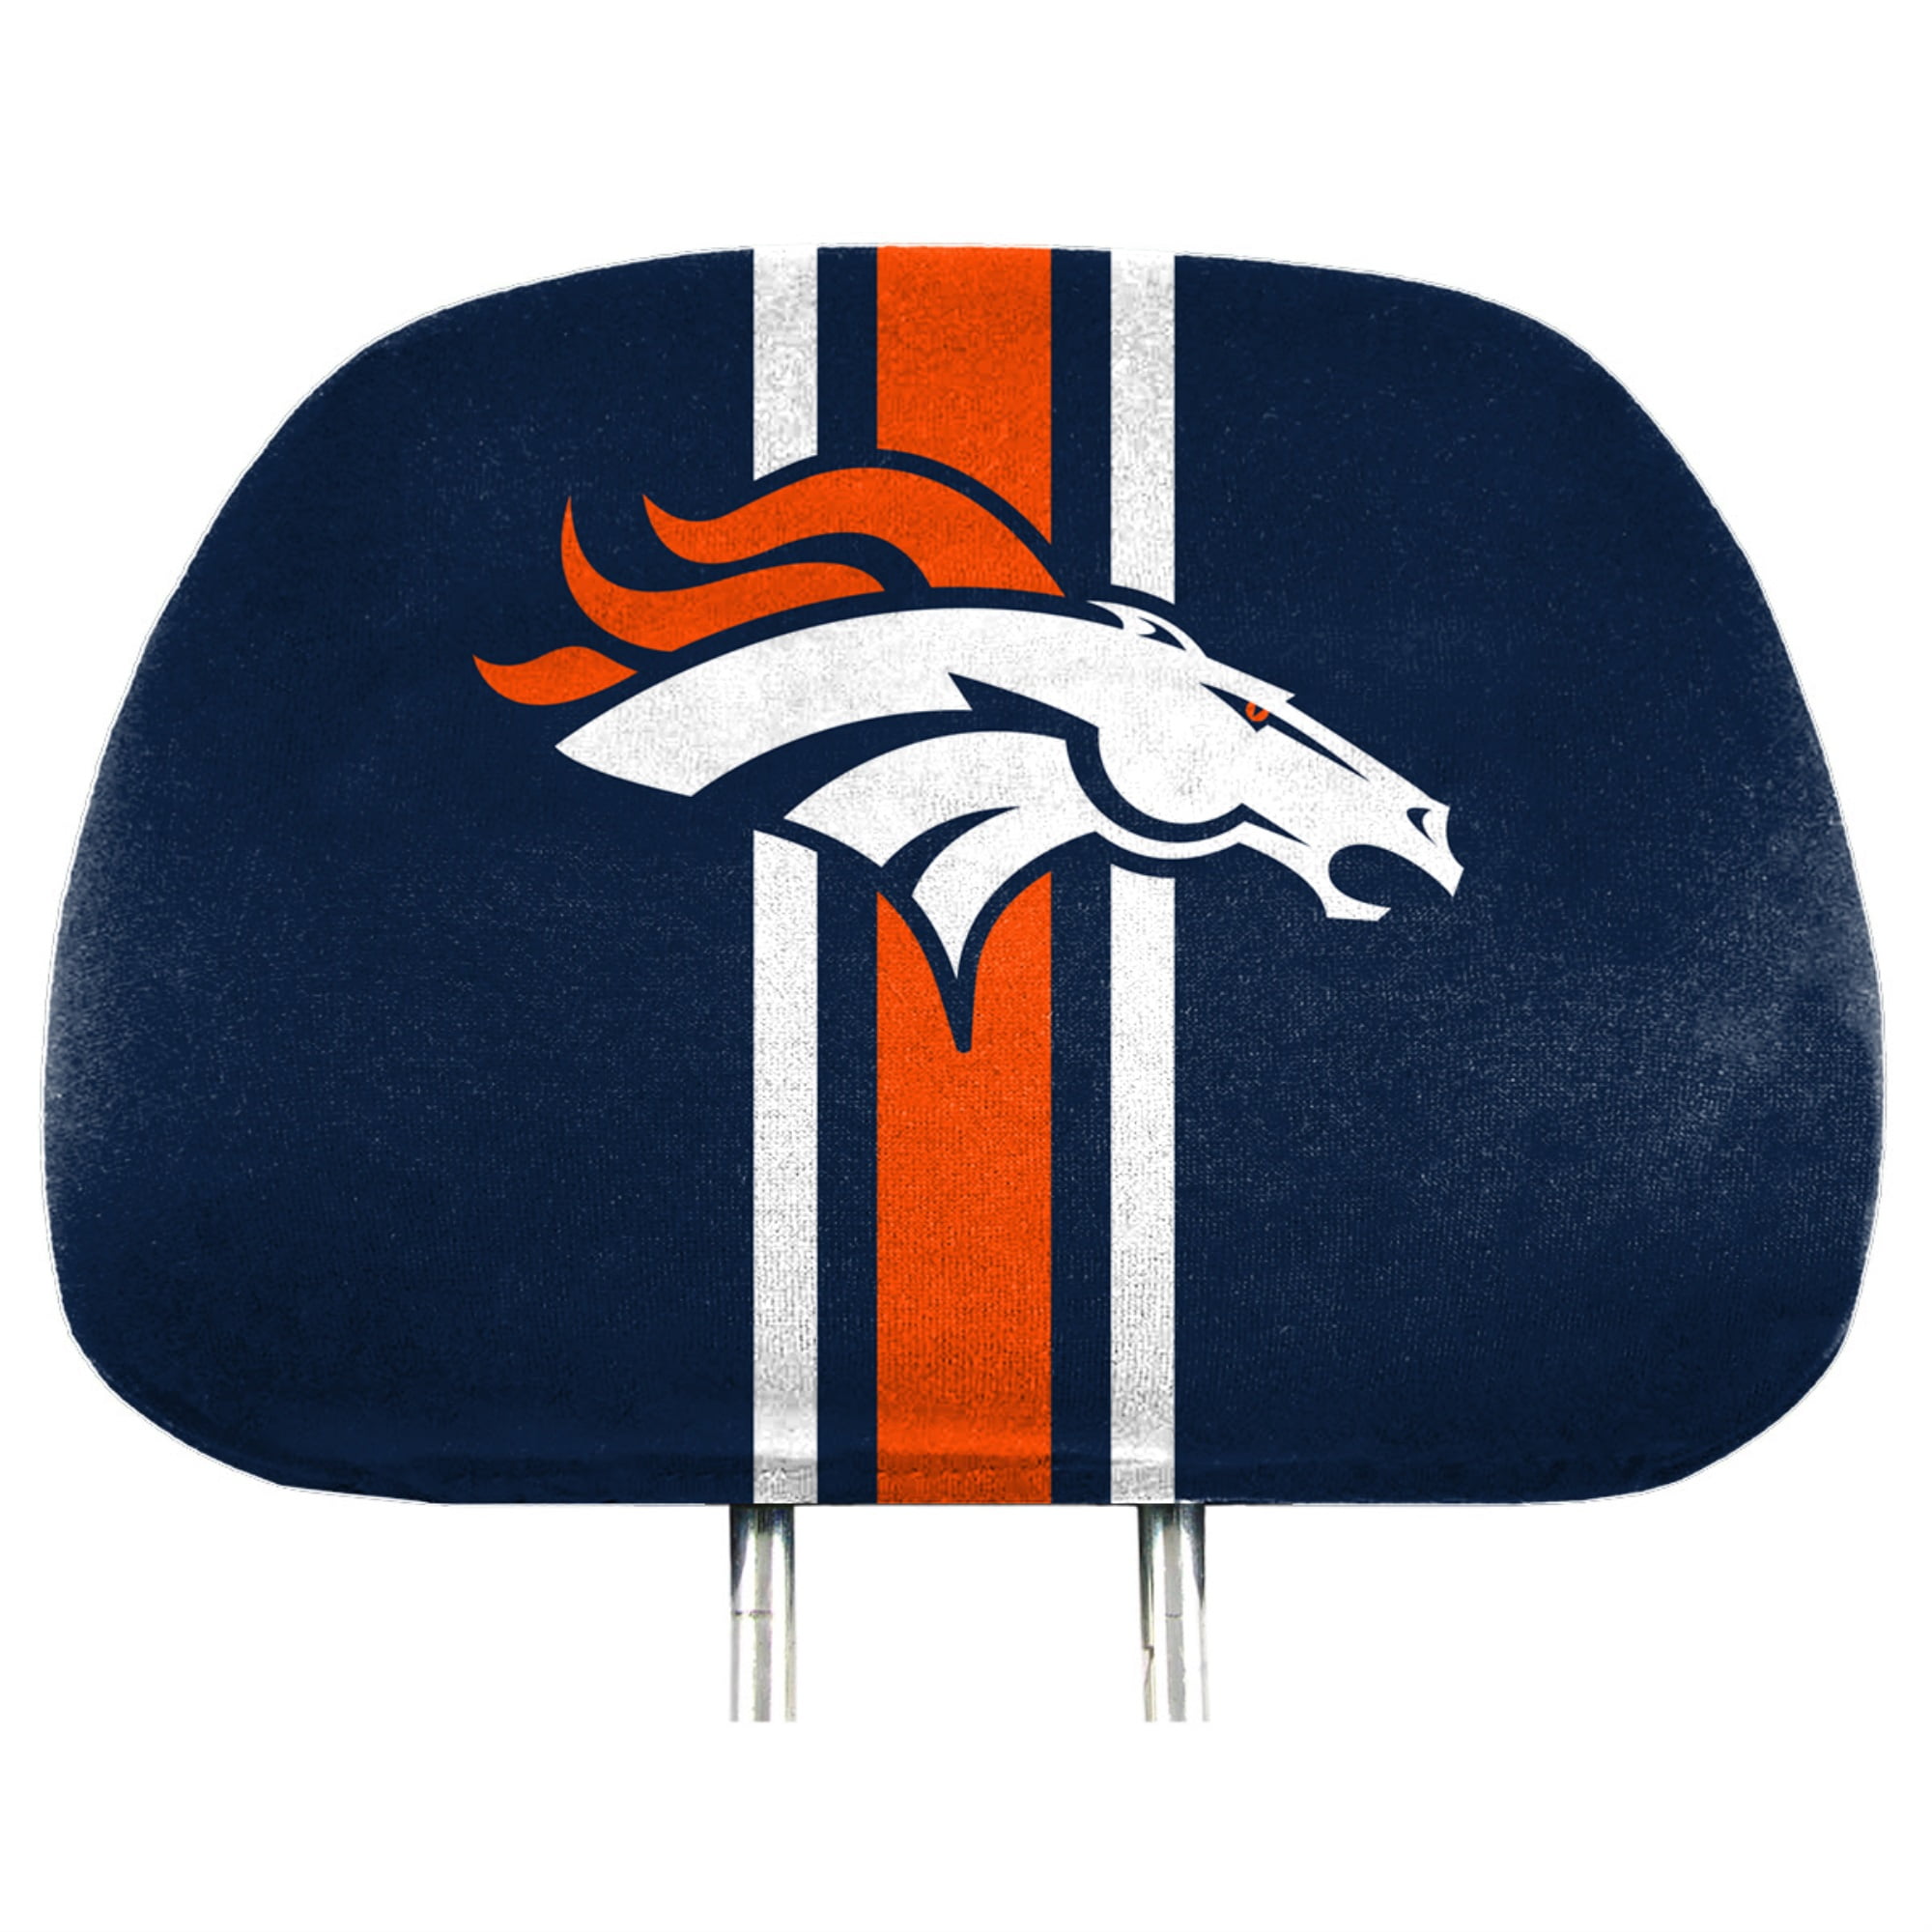 Denver Broncos Official National Football League Fan Shop Authentic Headrest Cover 